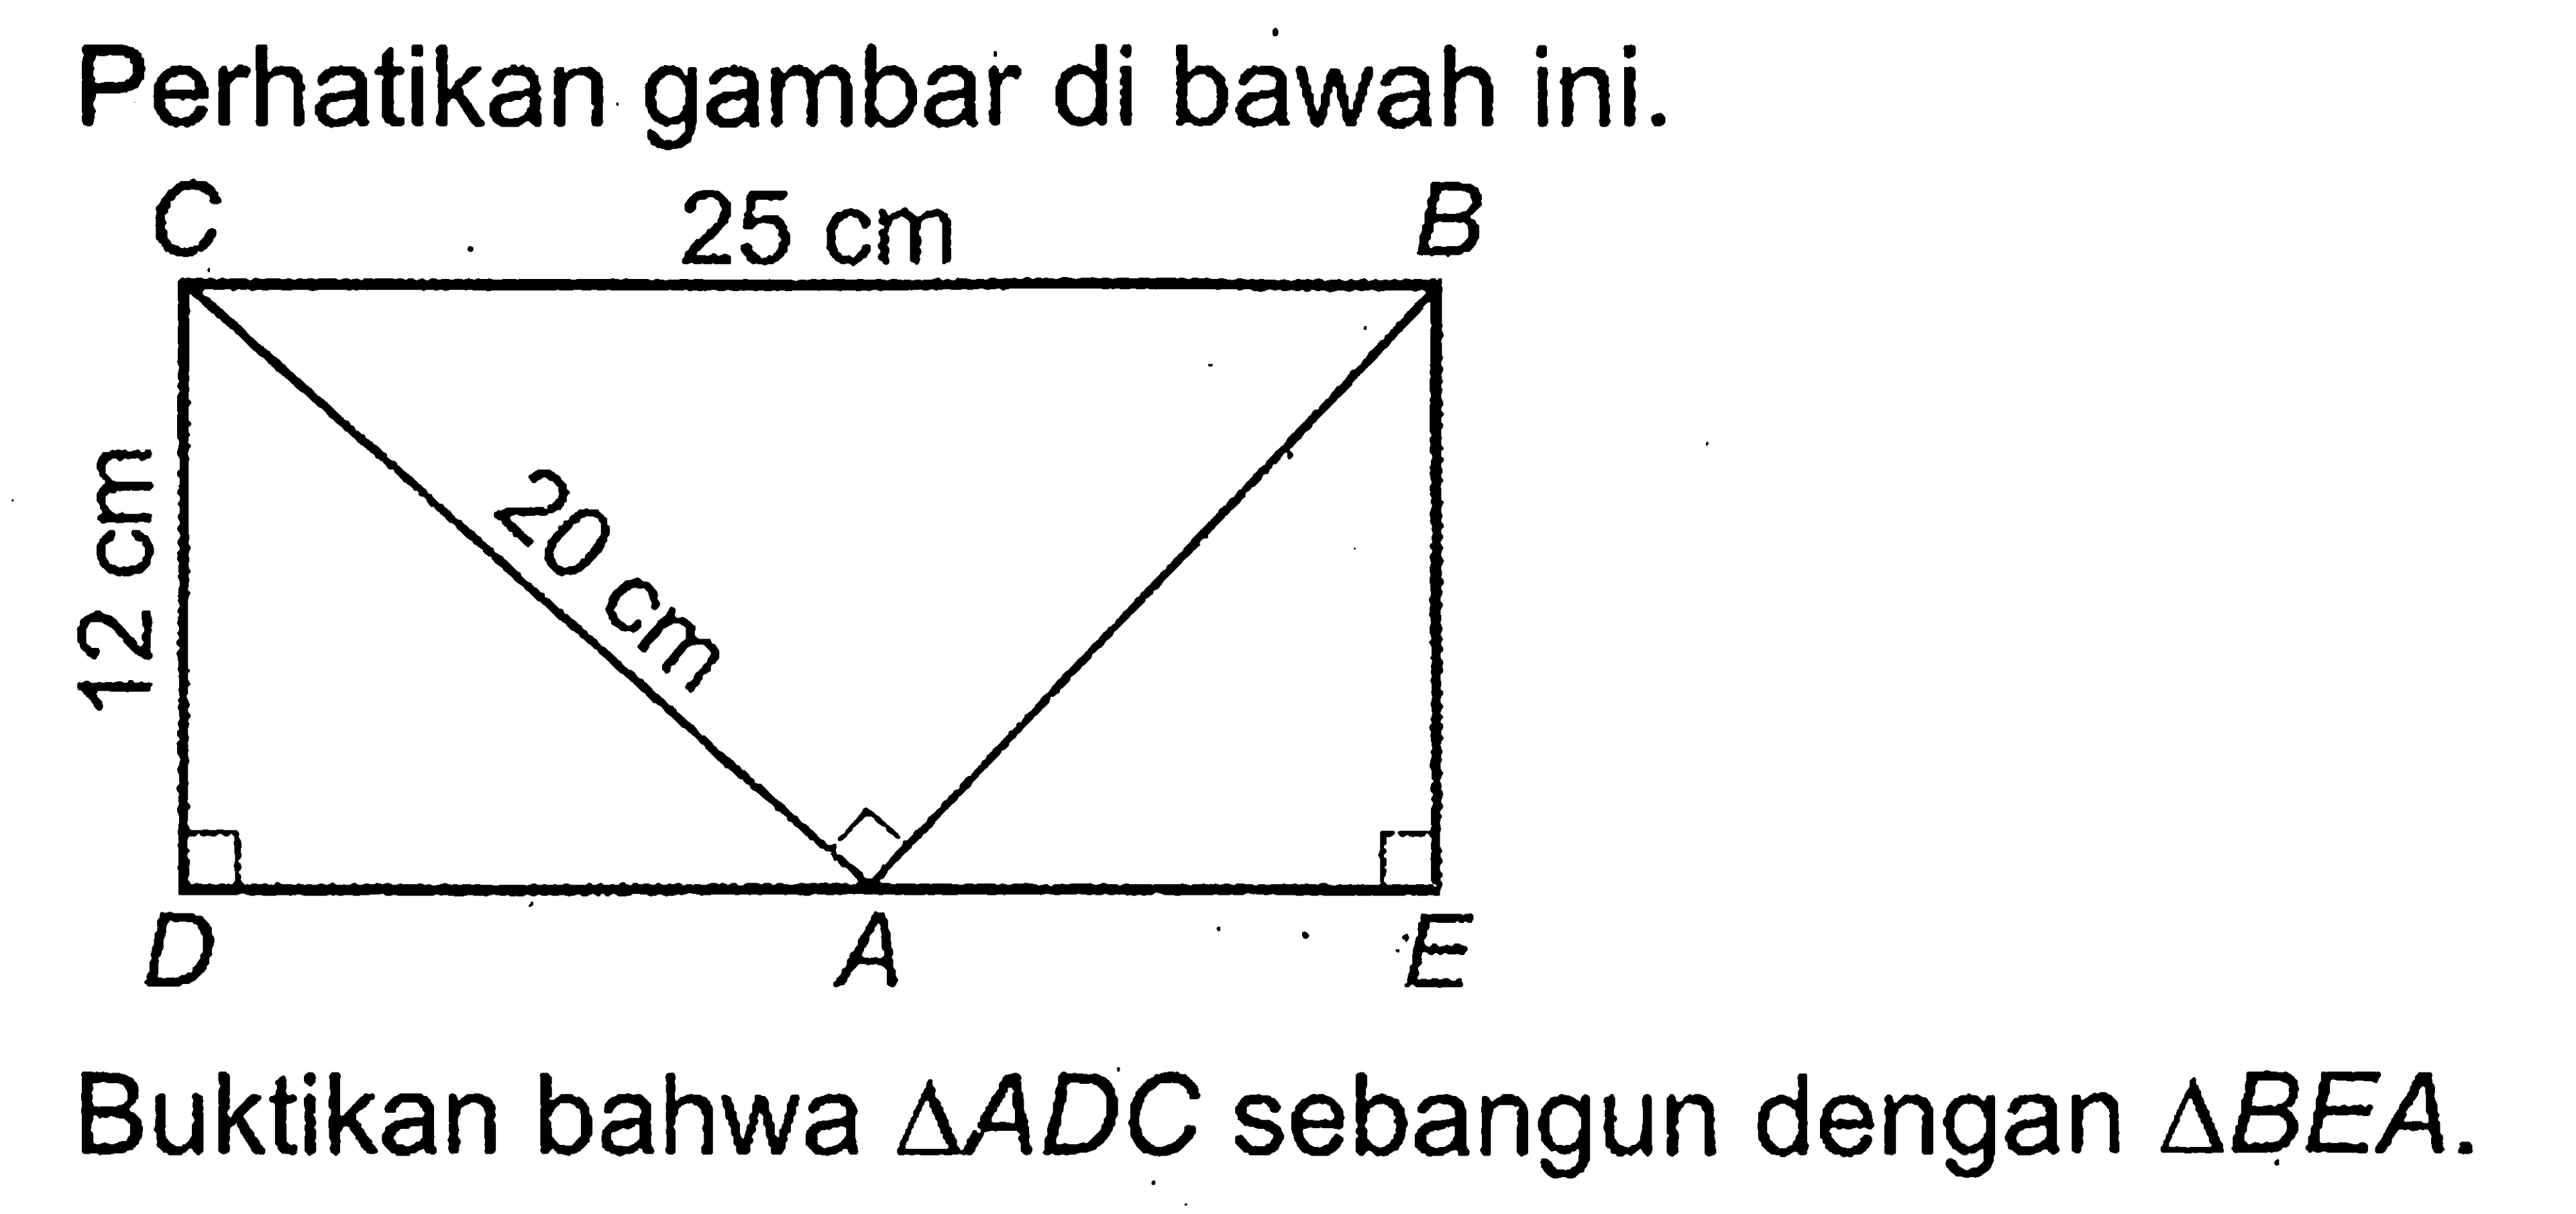 Perhatikan gambar di bawah ini. CBDAE CB=25 cm, CD=12cm, CA=20 cmBuktikan bahwa segitiga ADC sebangun dengan segitiga BEA .